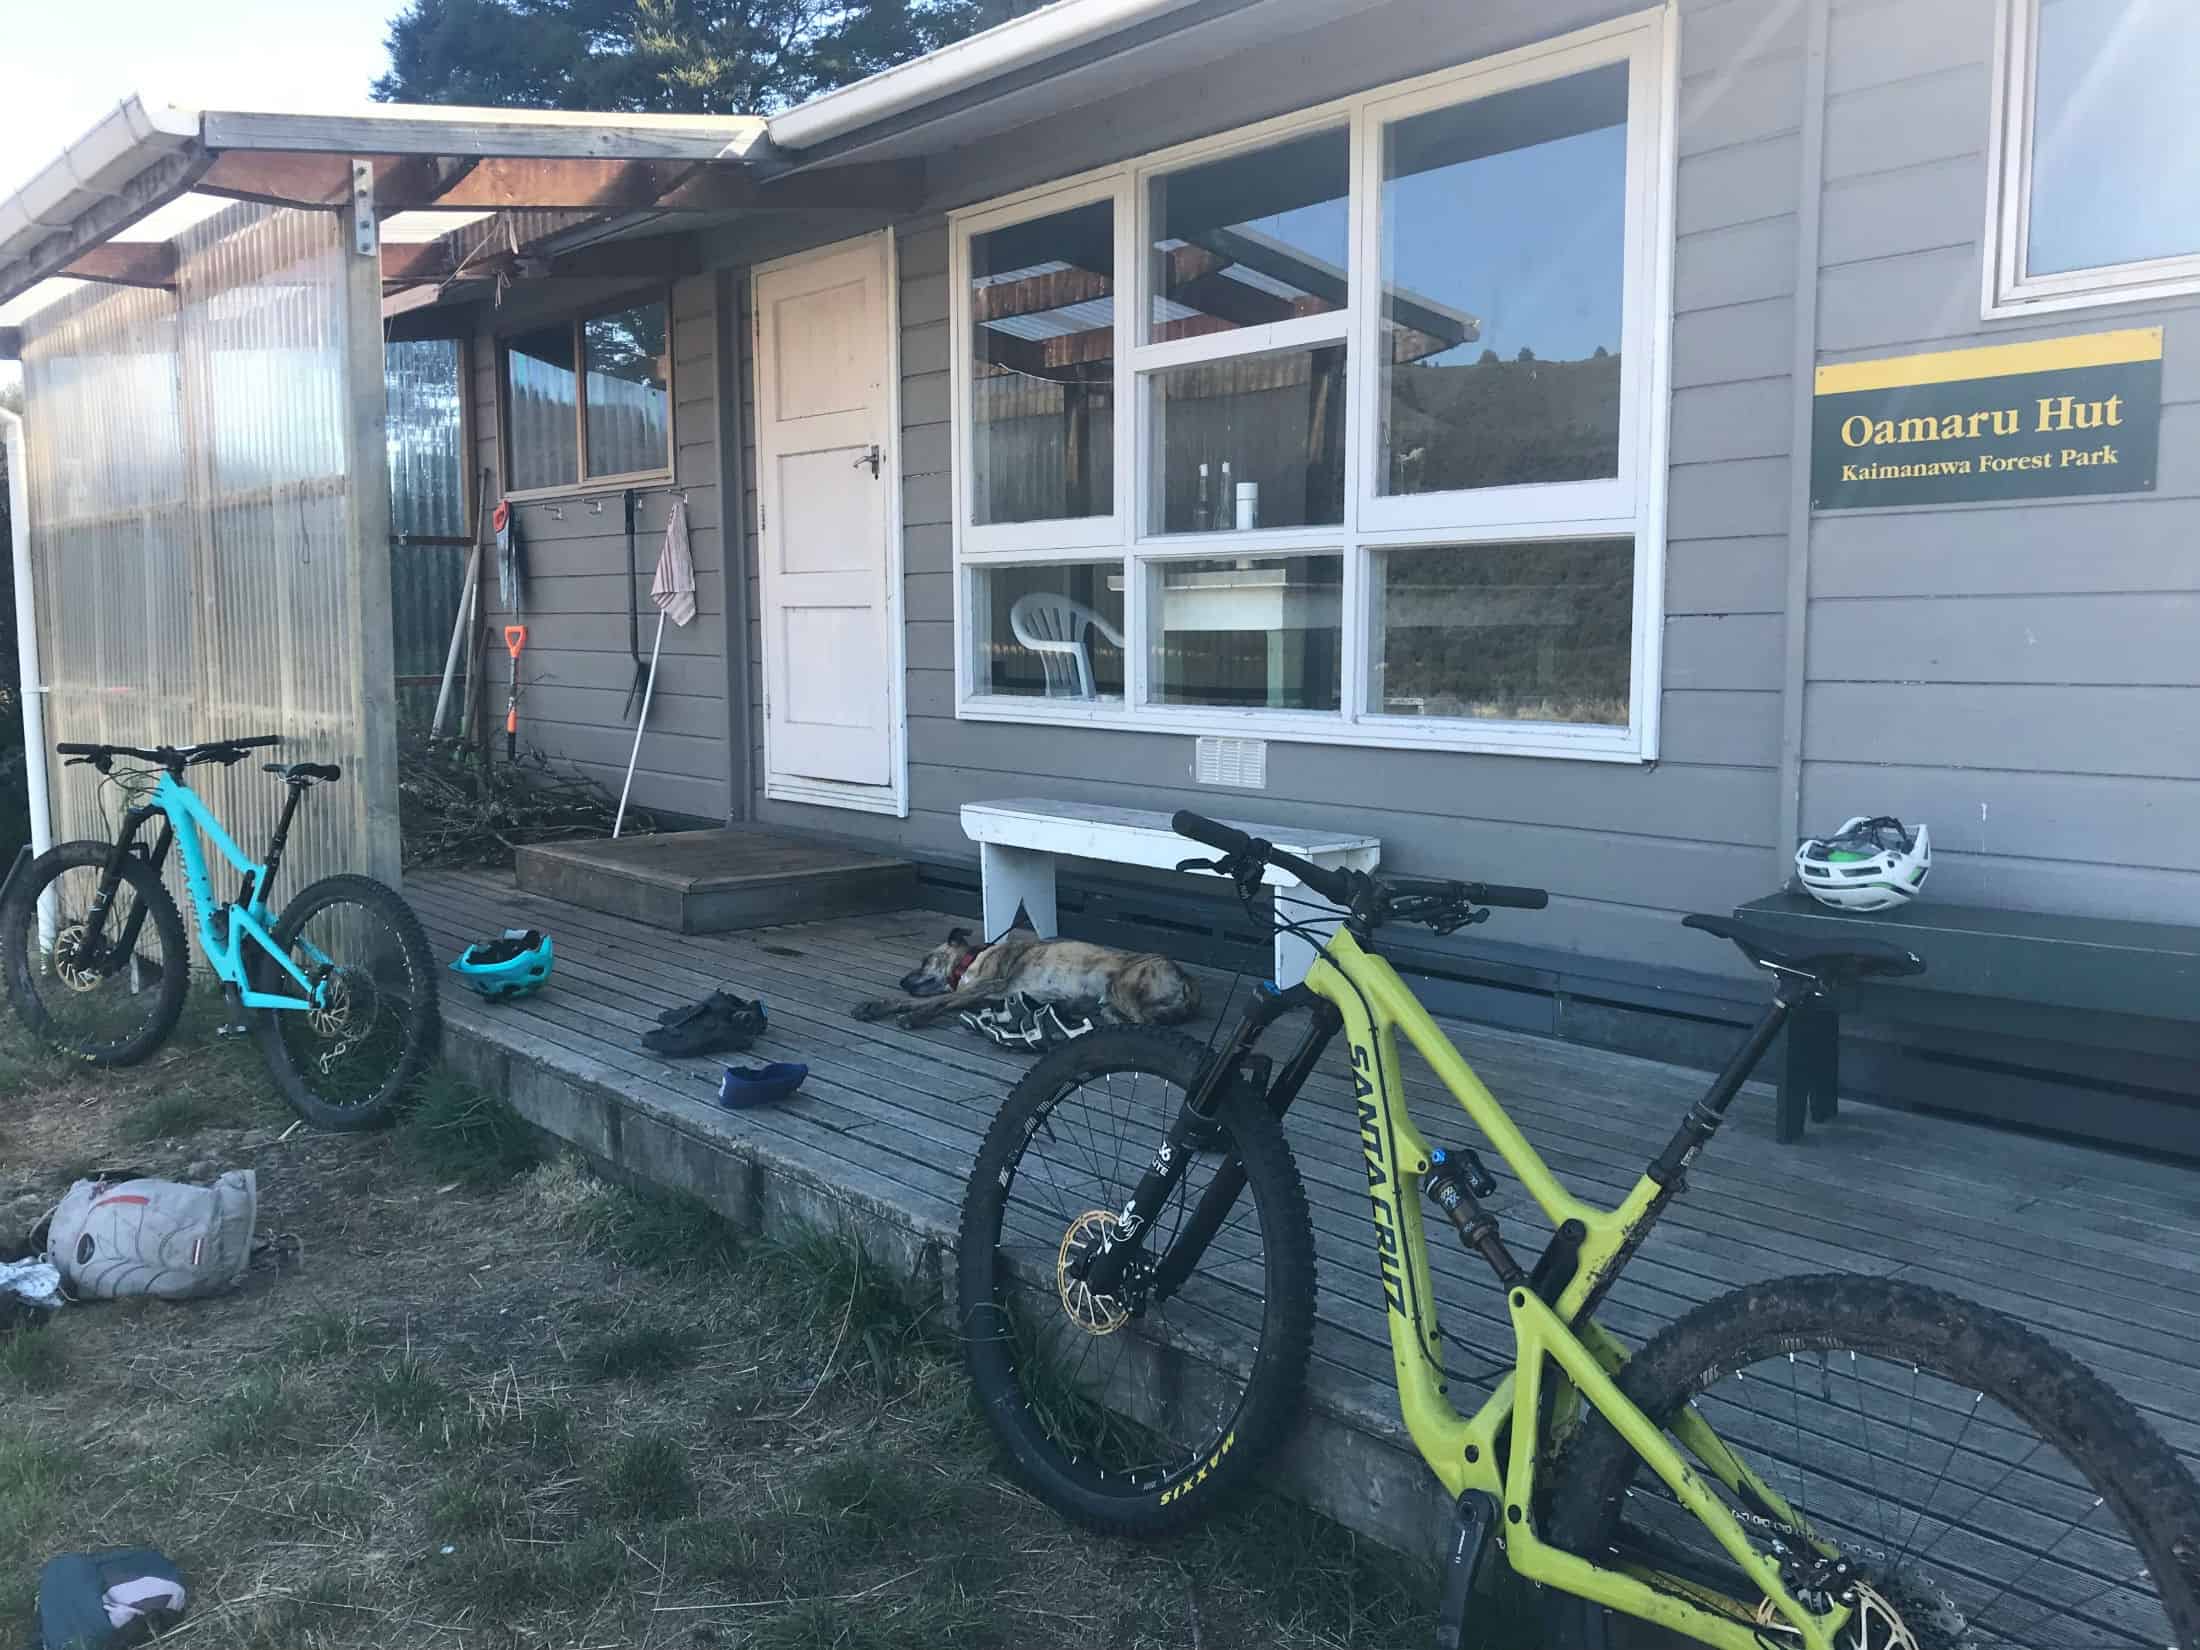 Bikes at Oamaru Hut on Te Iringa